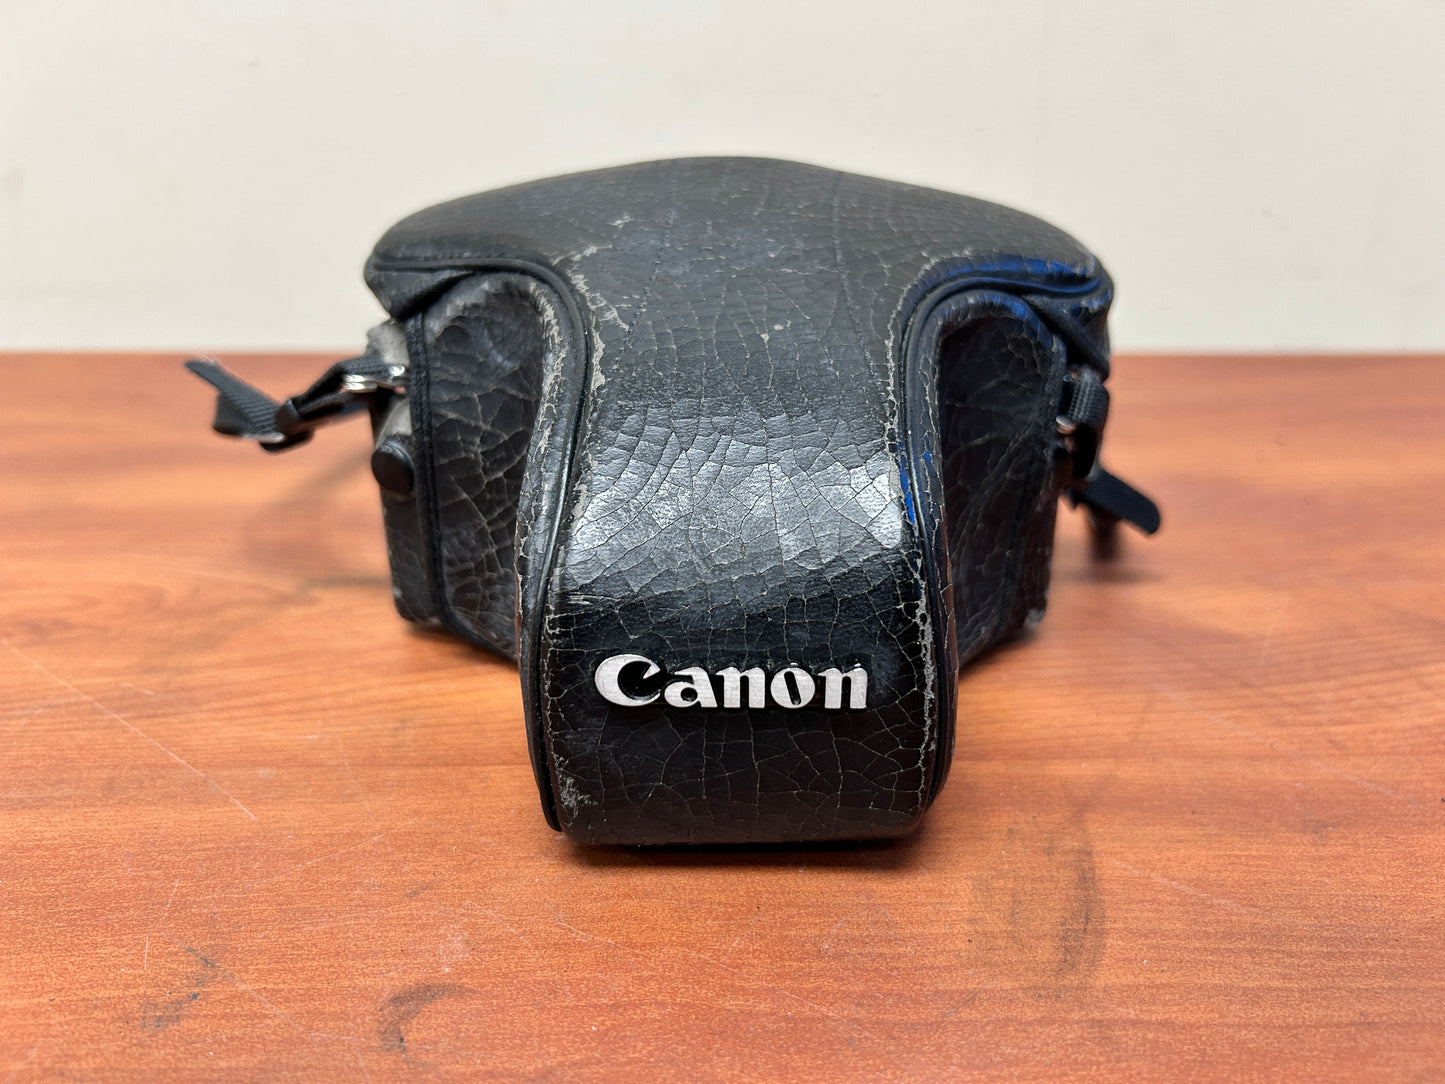 Canon AV-1 35mm SLR Camera S# 110620 with Canon FD 50mm 1:1.8 Lens S# 1790530